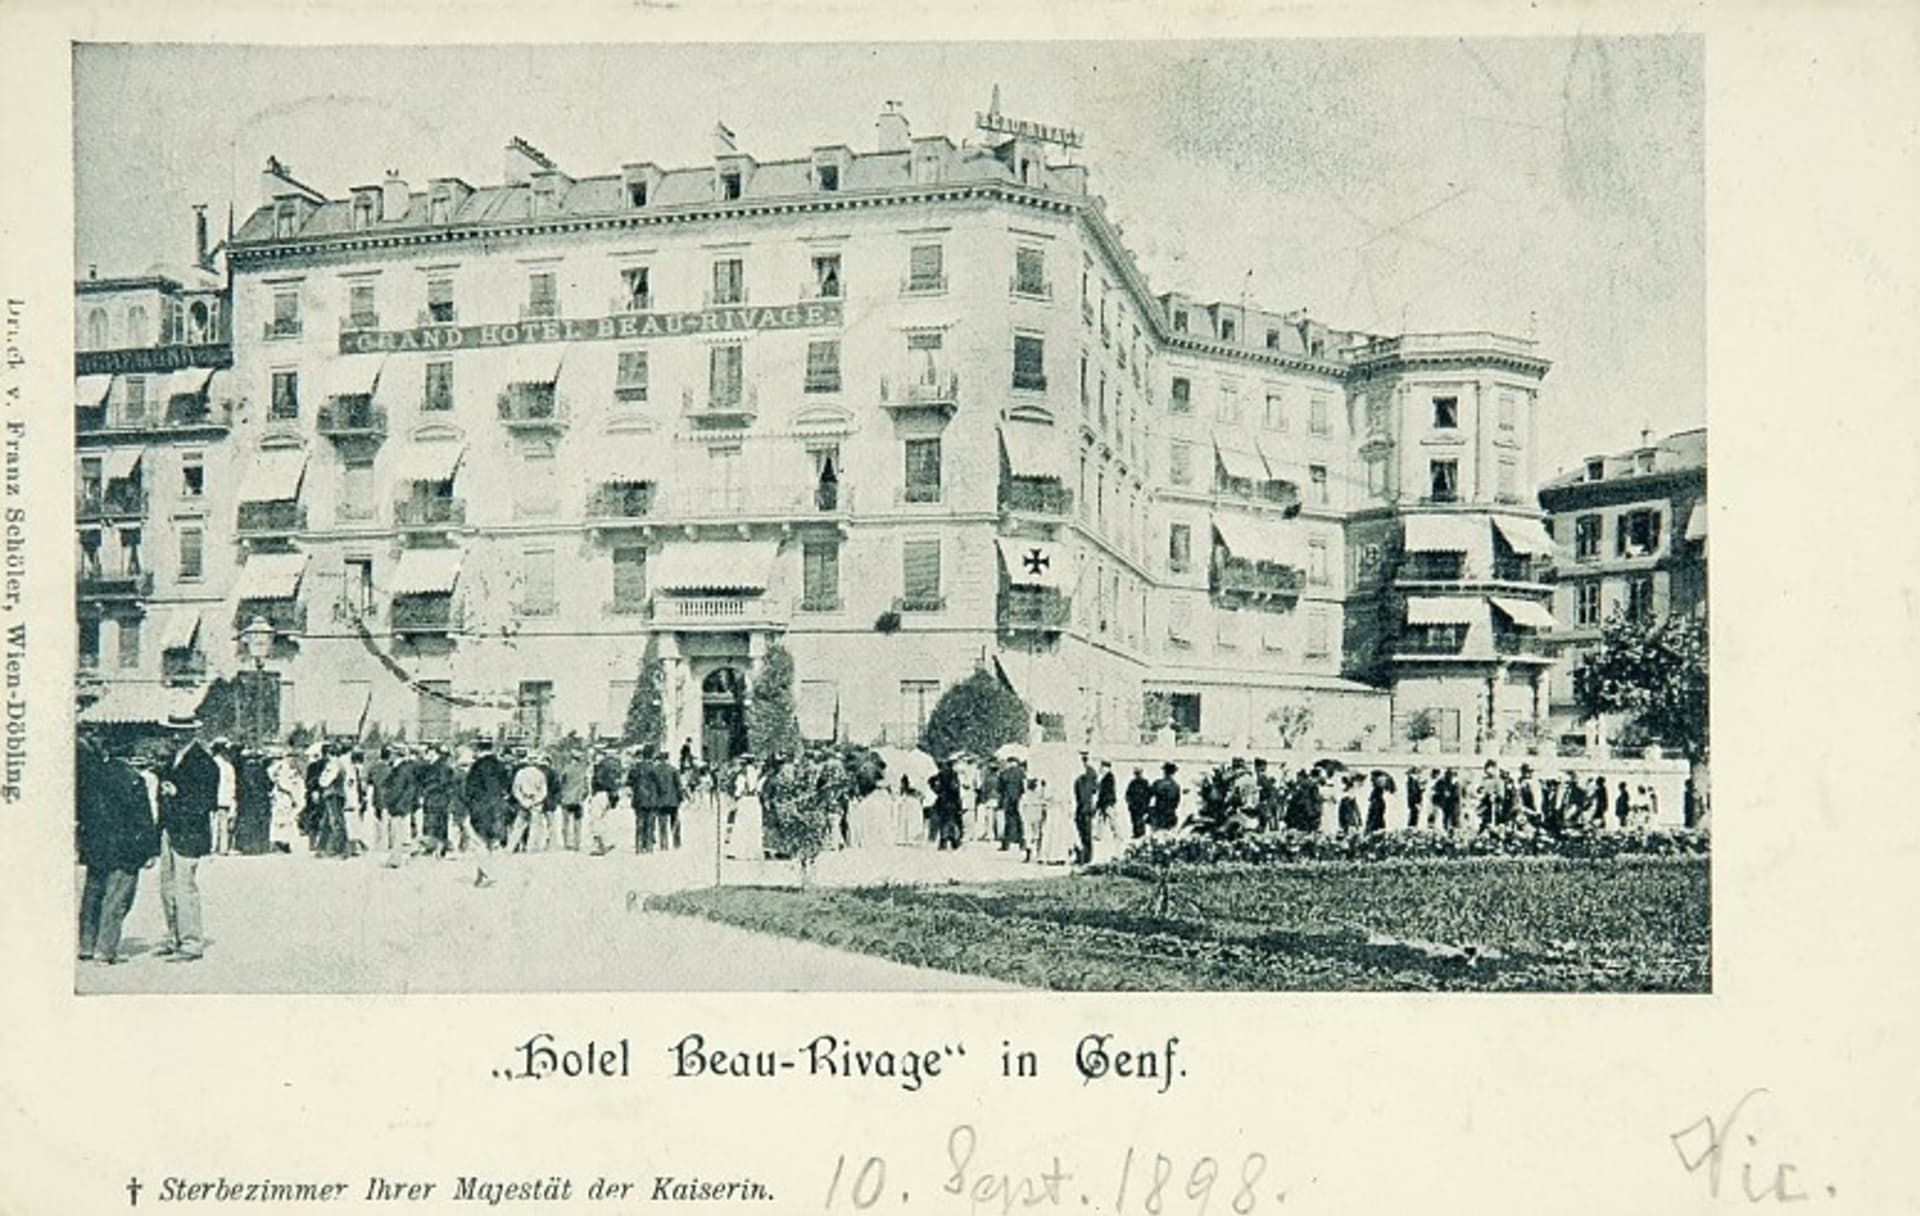 Pohlednice zachycuje shromáždění lidí před hotelem Beau-Rivage v Ženevě krátce po smrti Sissi